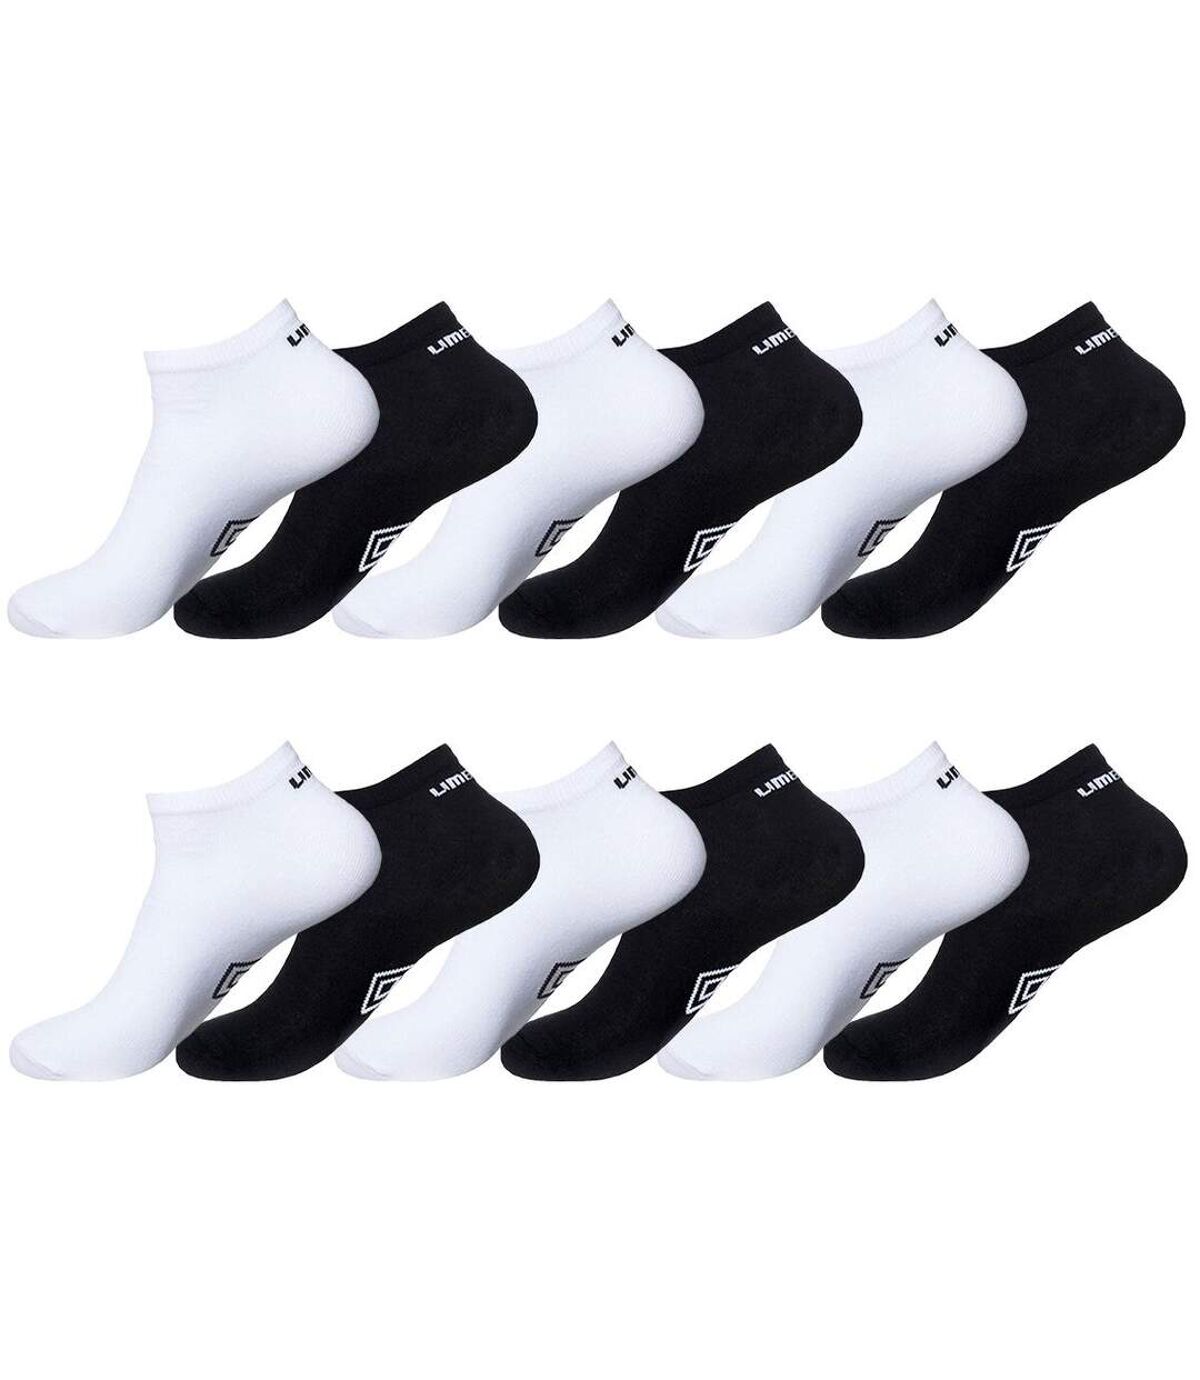 Chaussette Homme Coton - Lot de 12 - Socquettes Sportswear Homme, Respirantes, Confortables